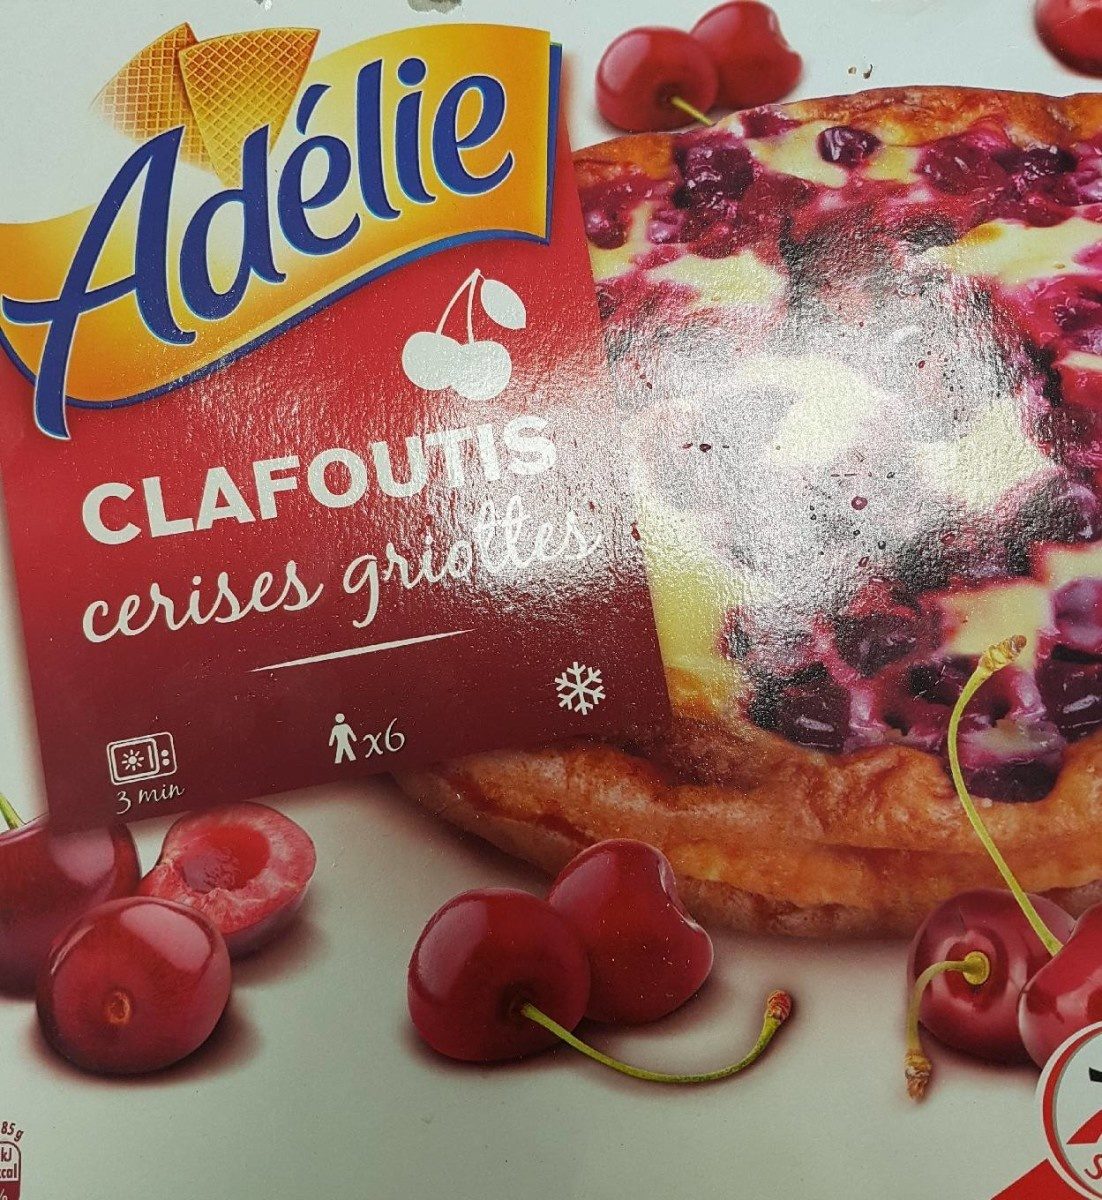 Adélie Clafoutis cerises griottes 510 g - Produit